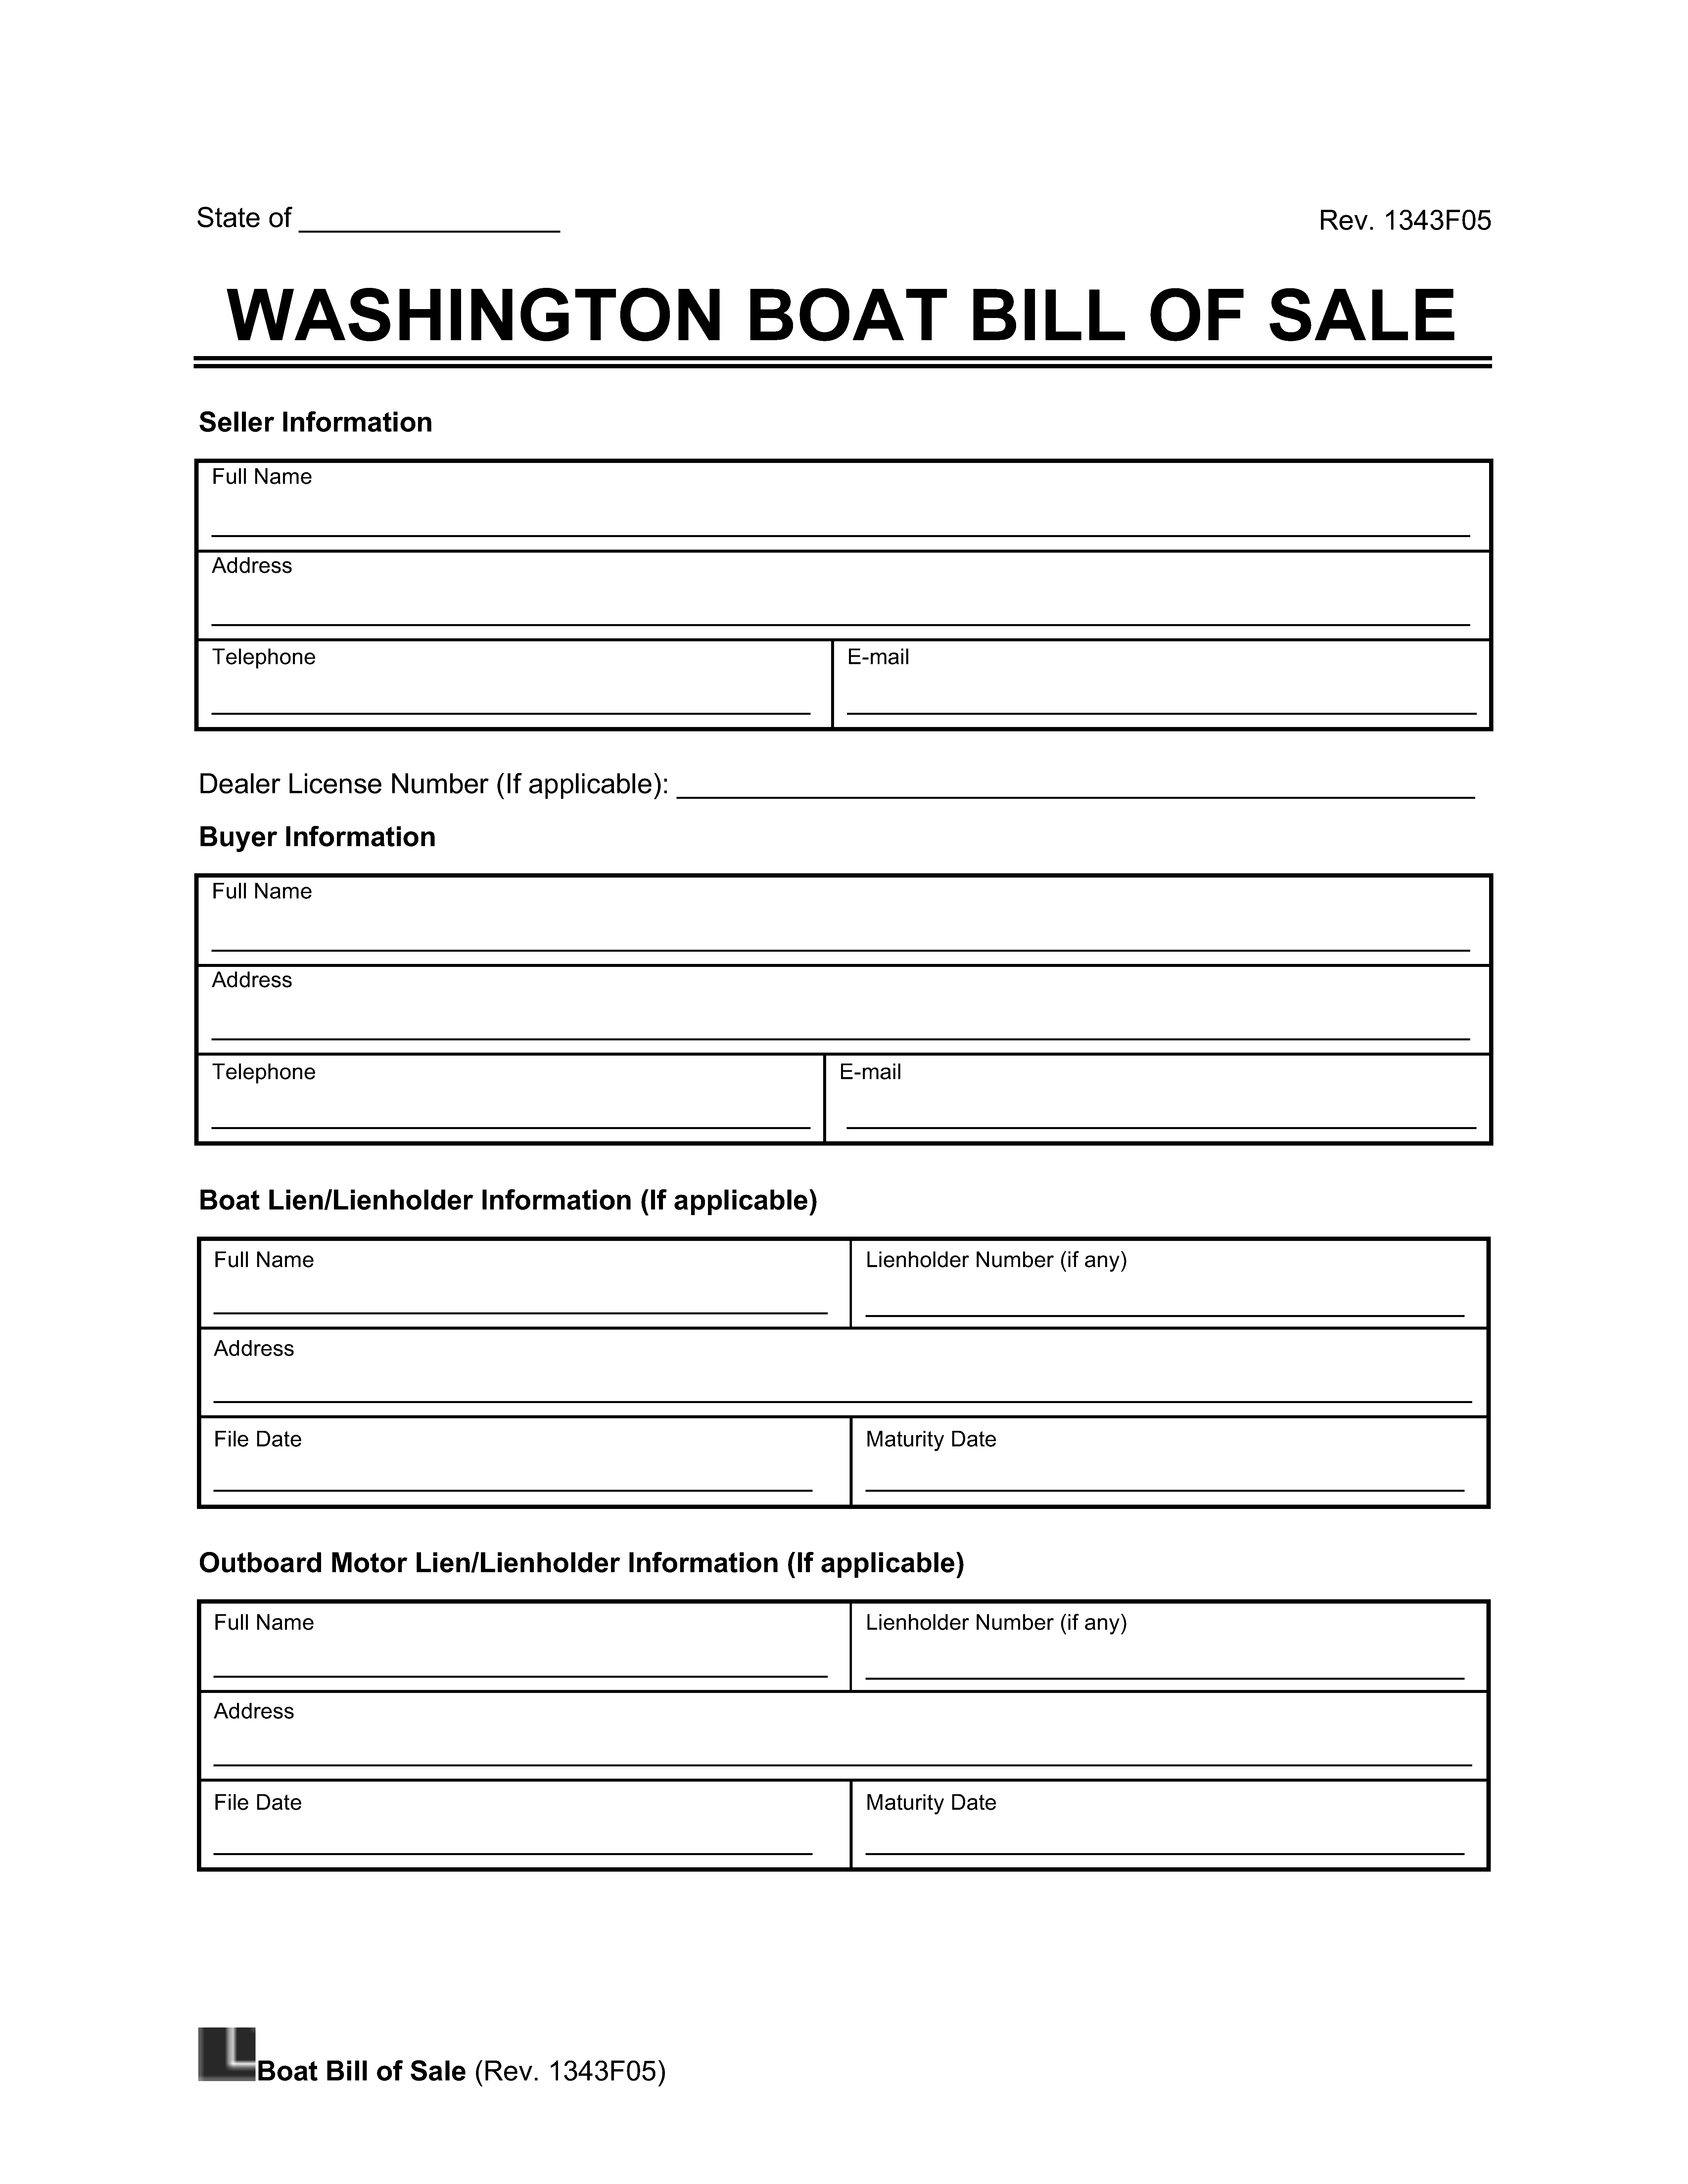 Washington Boat Bill of Sale screenshot